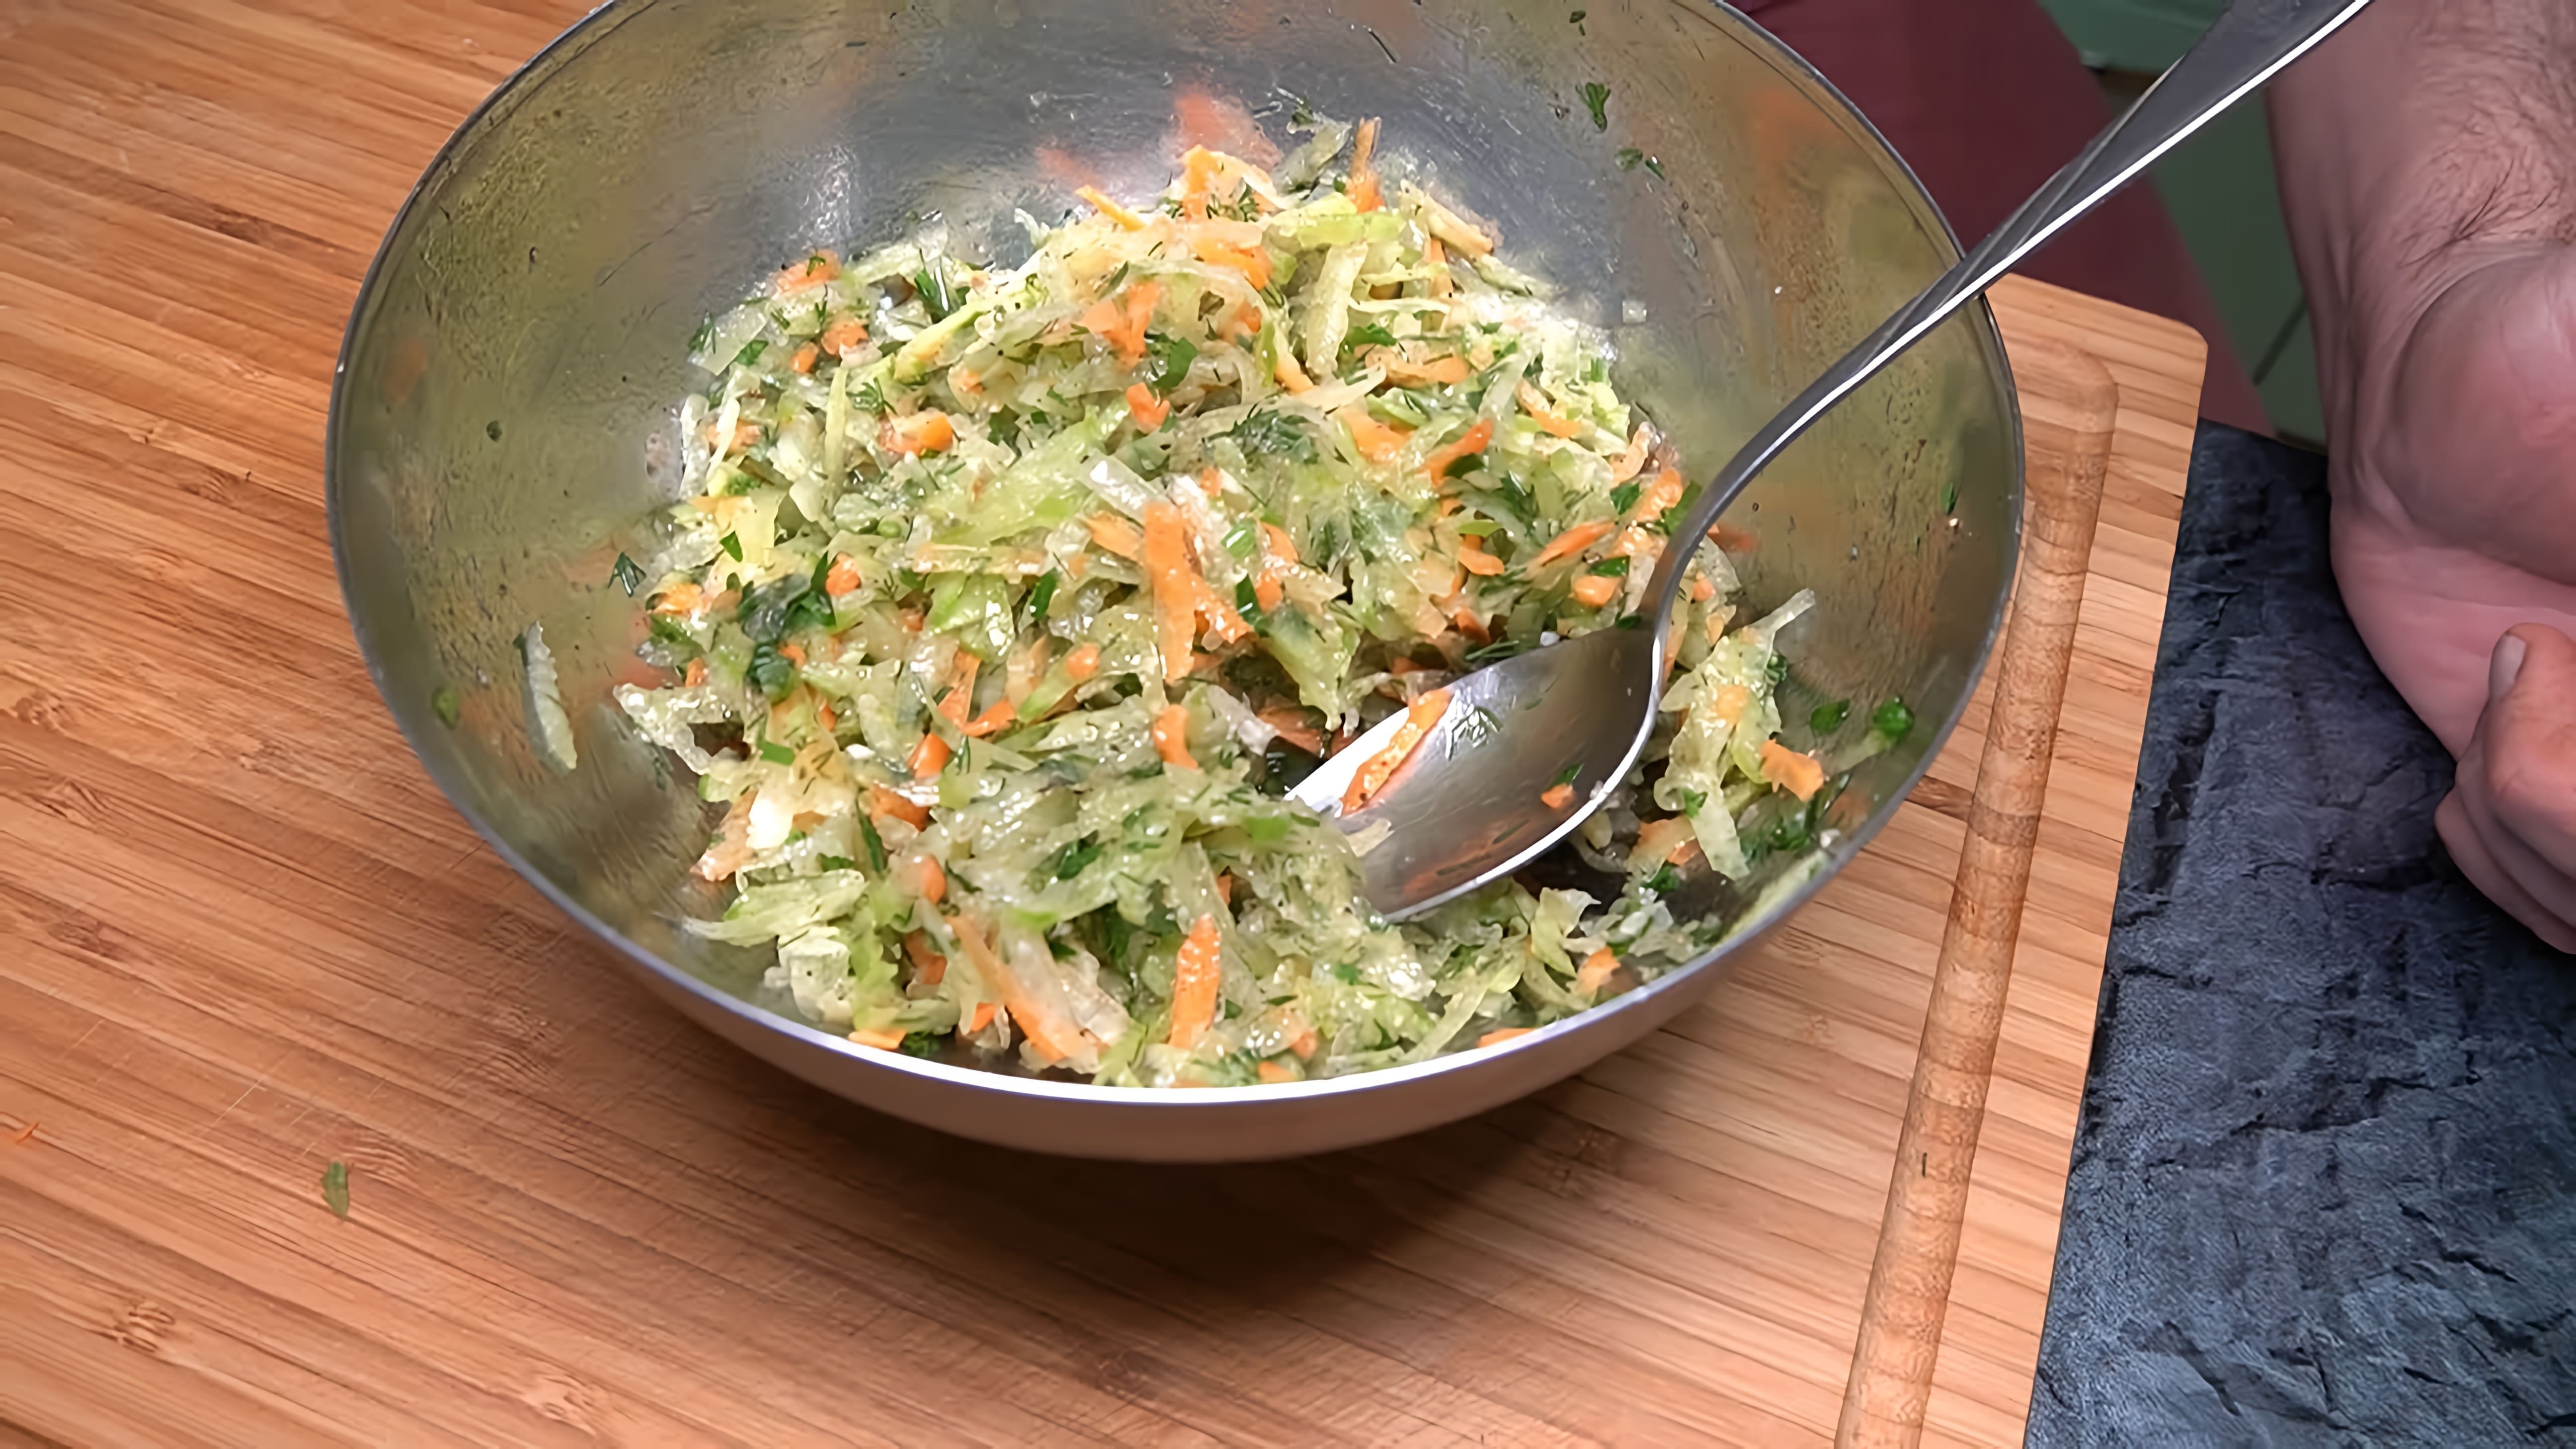 В этом видео демонстрируется процесс приготовления салата из зеленой редьки, также известной как маргеланская редька